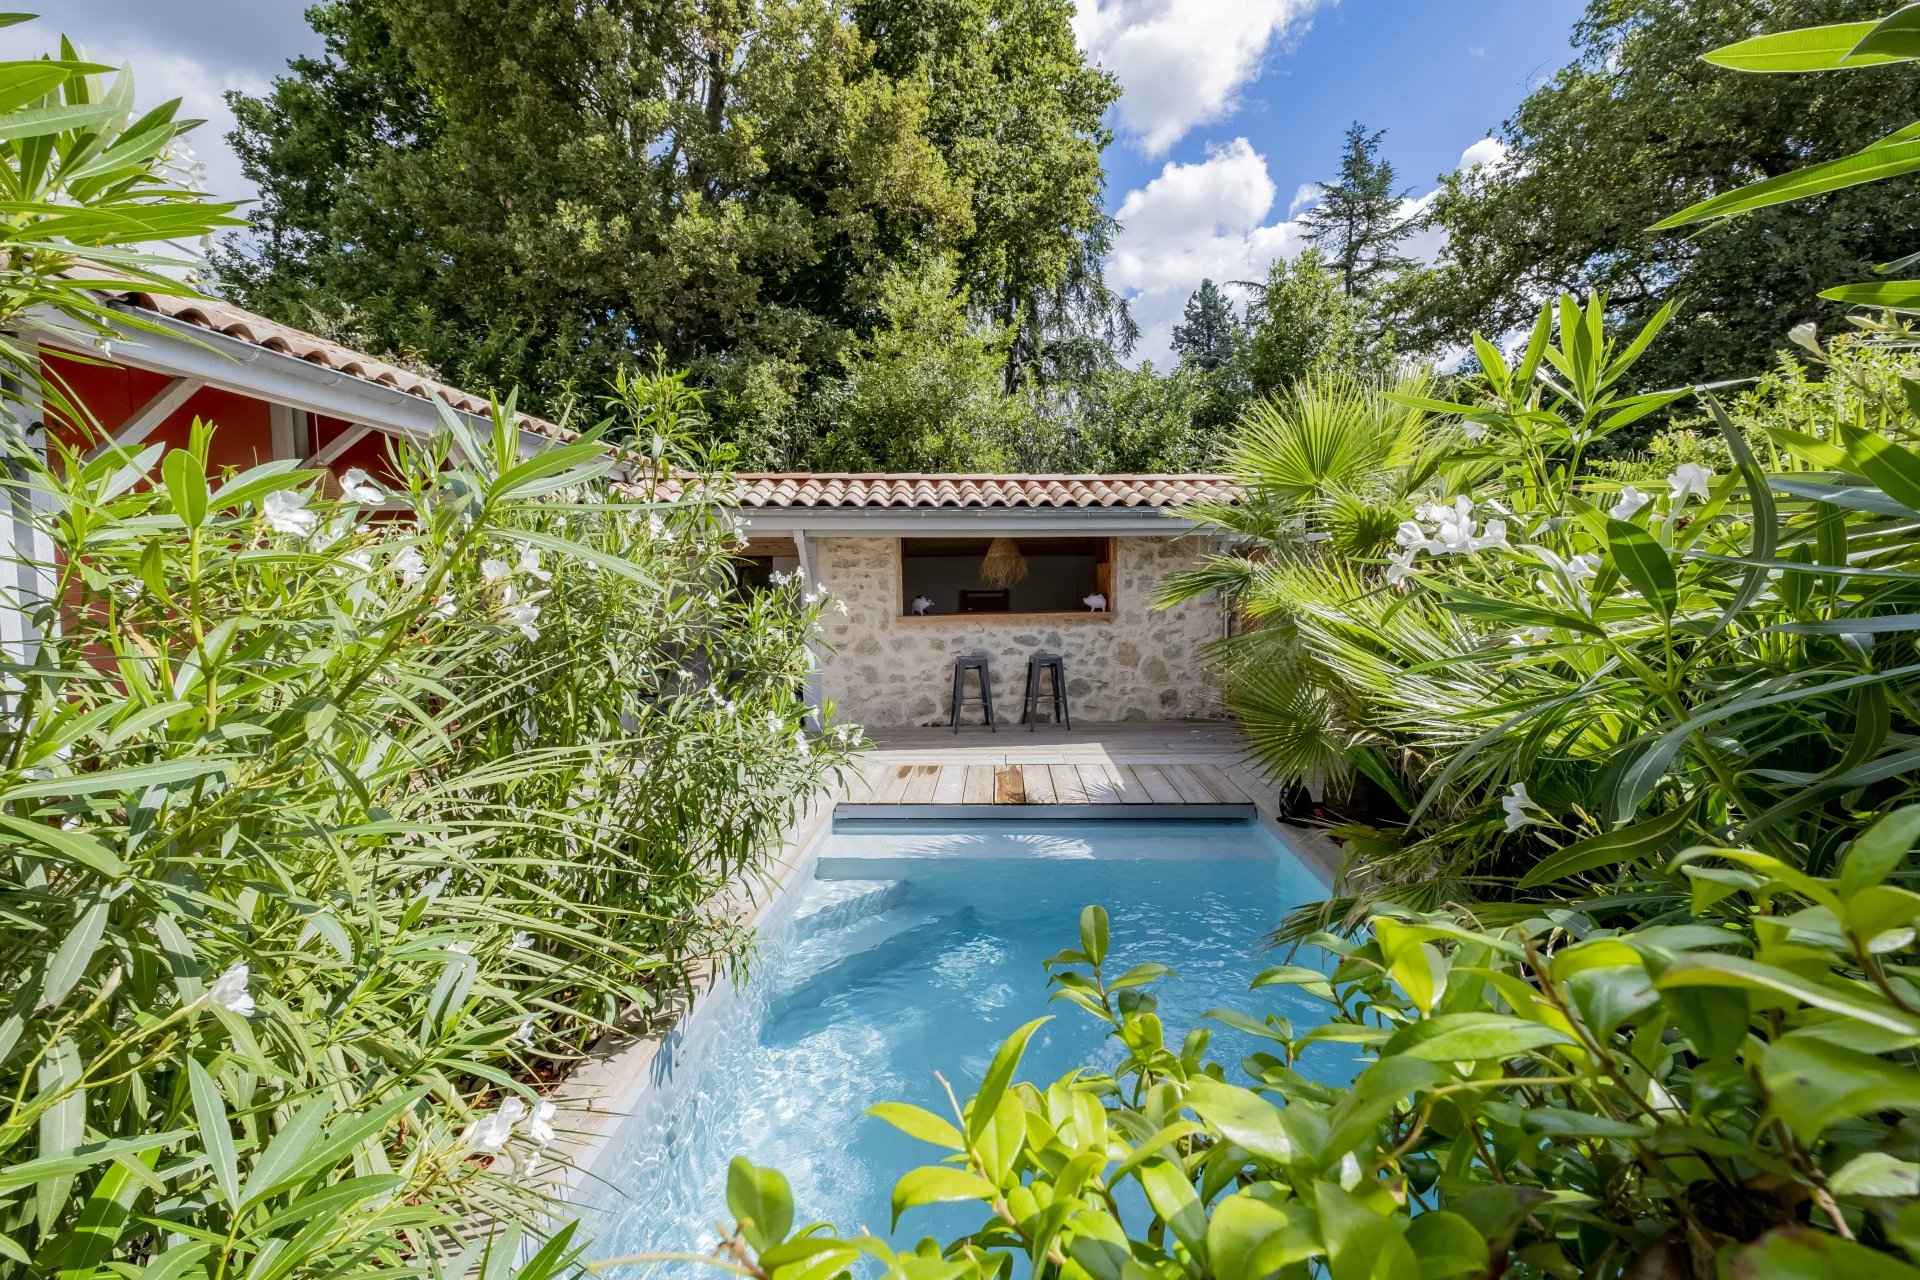 À vendre Maison Bordeaux - Caudéran 175 m²  - 4 chambres - jardin - piscine - garage